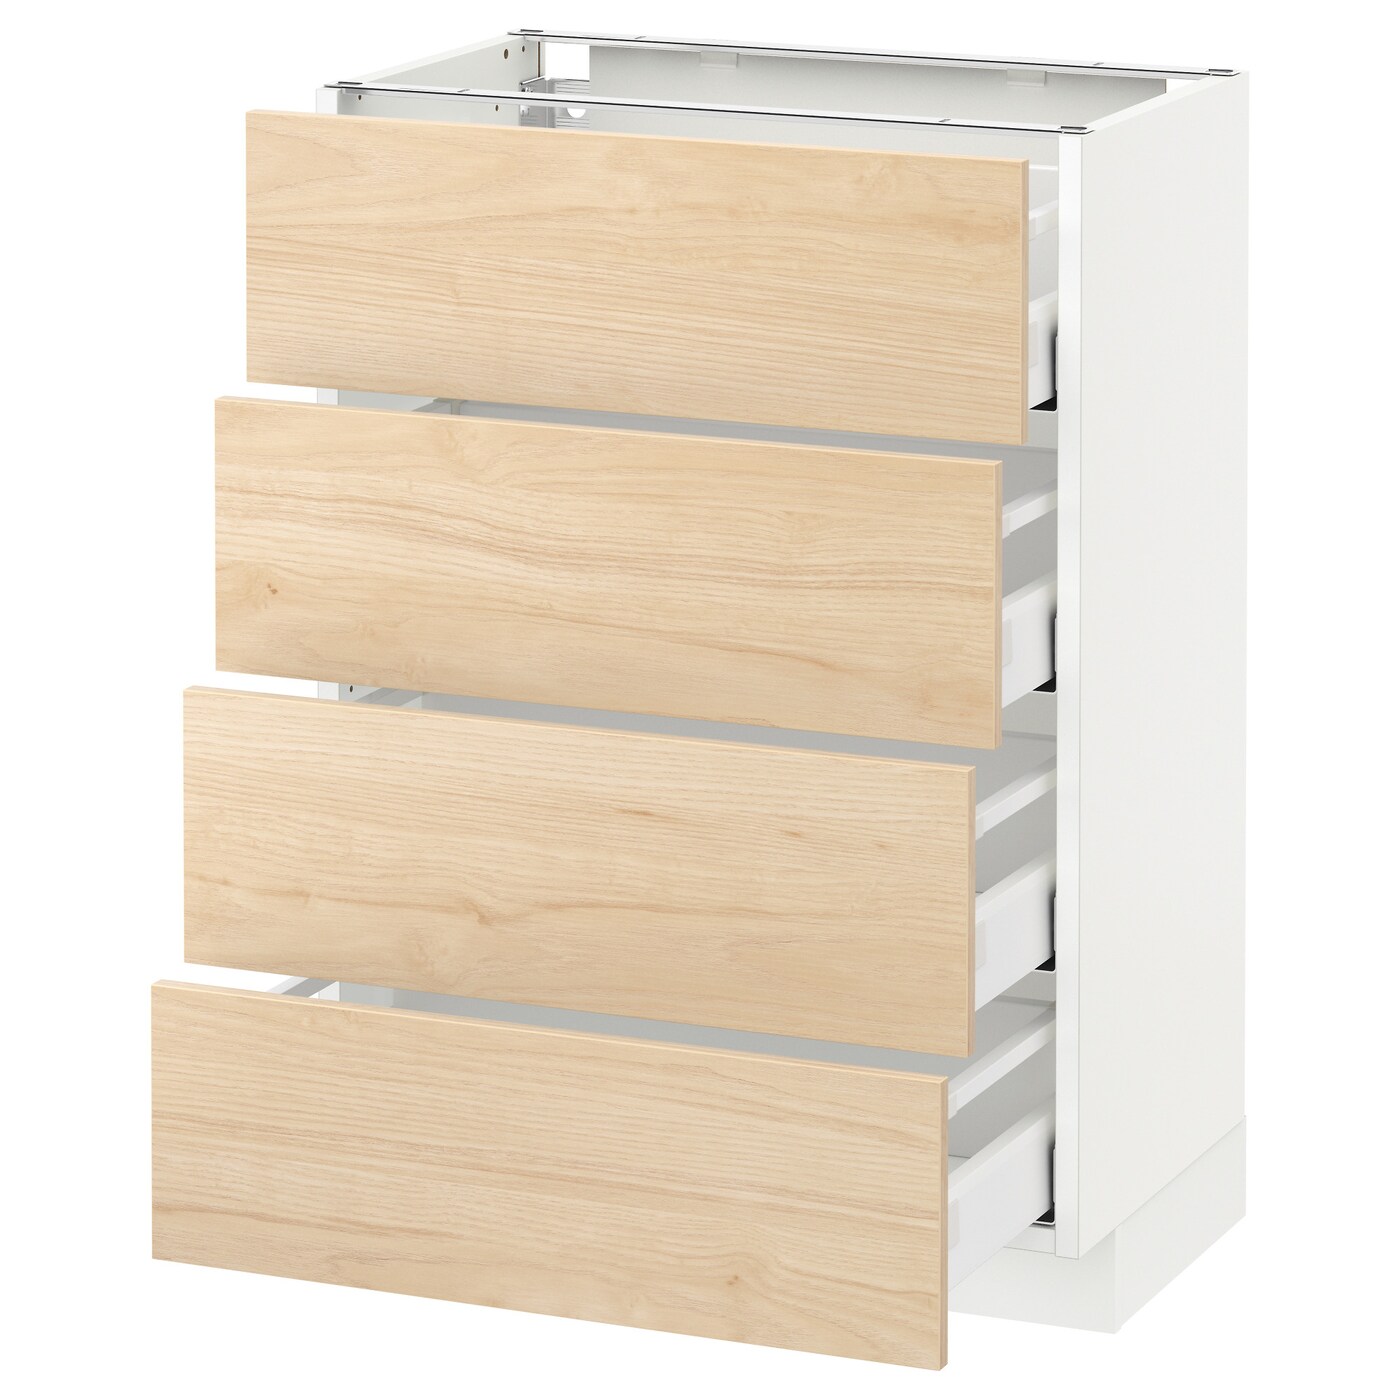 Напольный кухонный шкаф  - IKEA METOD MAXIMERA, 88x39,2x60см, белый/светло-коричневый, МЕТОД МАКСИМЕРА ИКЕА